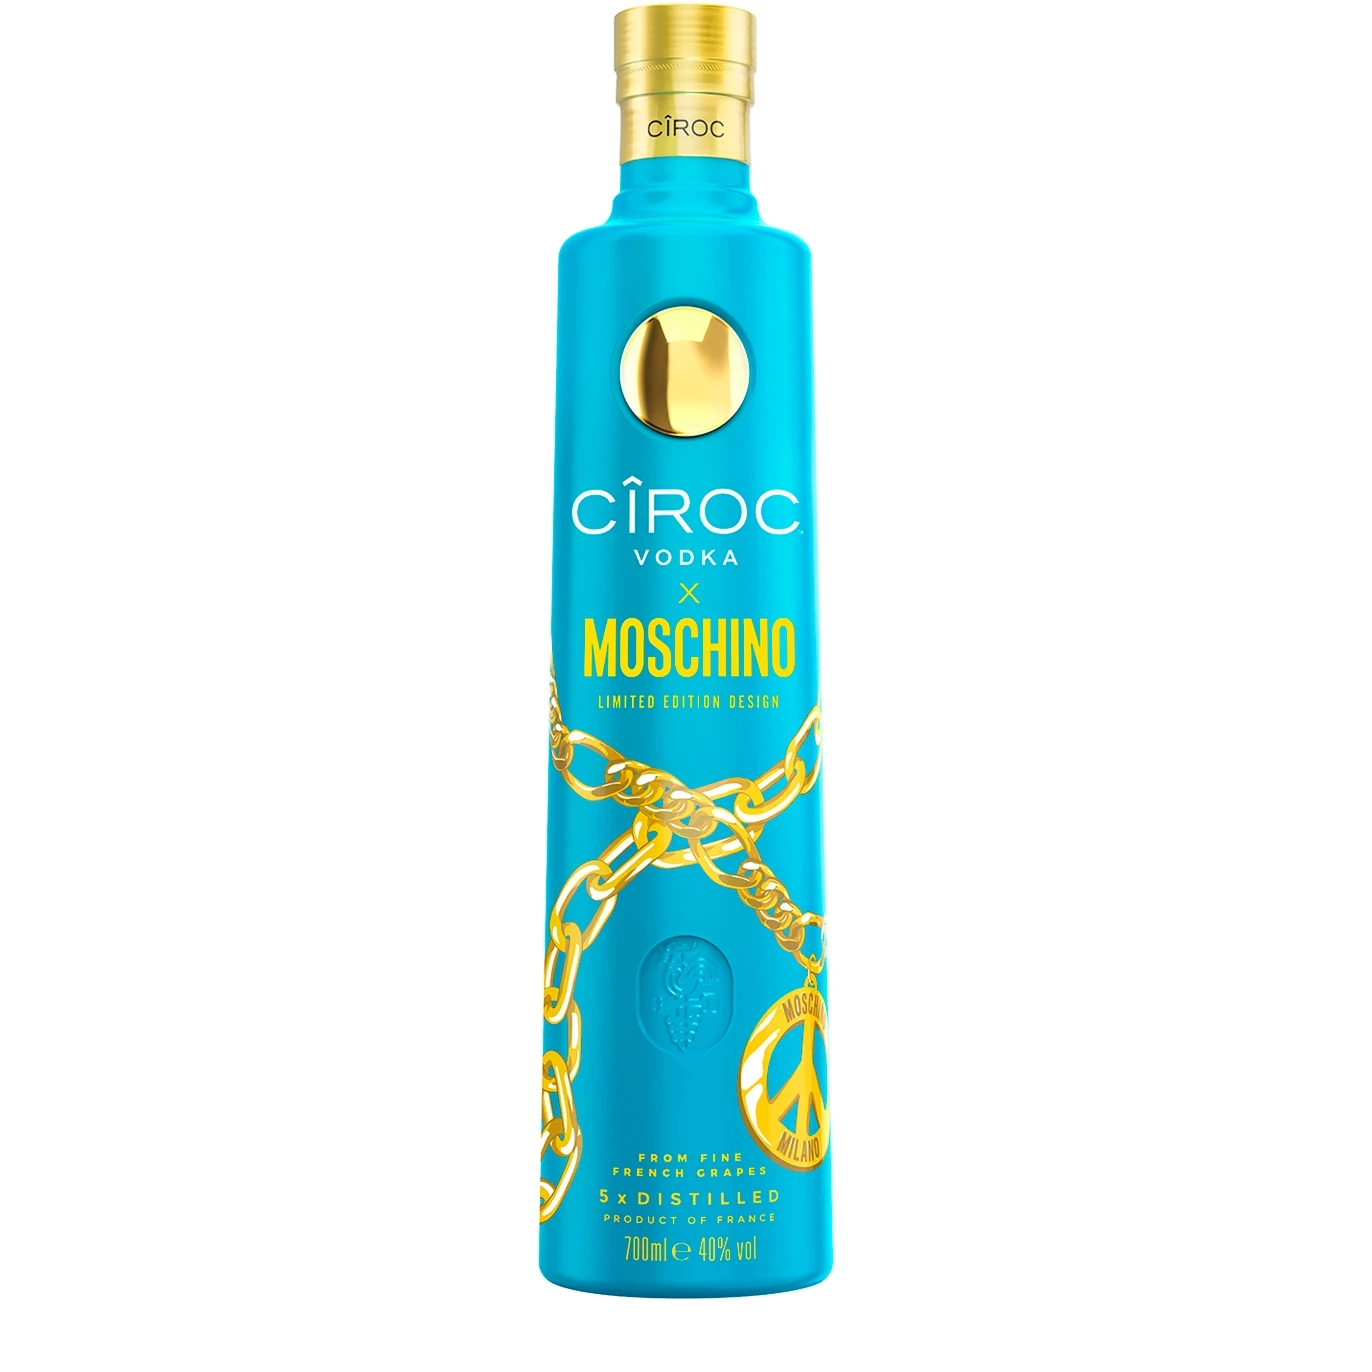 Недорогая оригинальная водка Ciroc, оптовая продажа водки CIROC с натуральными вкусами